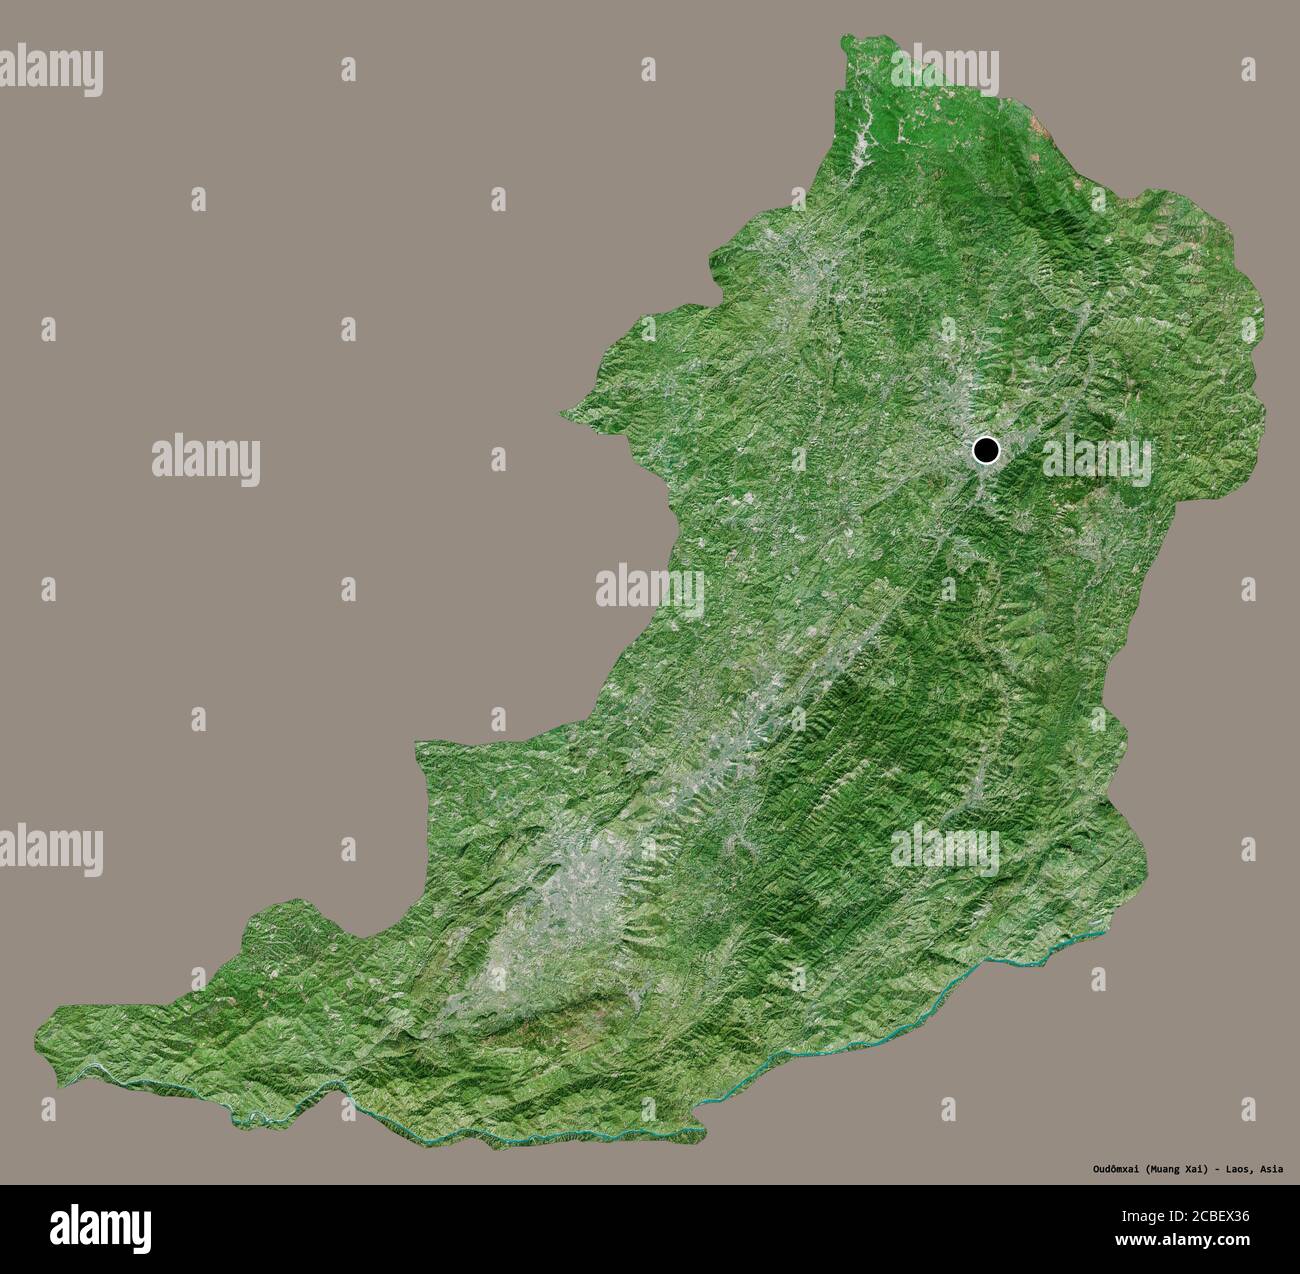 Forma di Oudômxai, provincia del Laos, con la sua capitale isolata su uno sfondo di colore pieno. Immagini satellitari. Rendering 3D Foto Stock